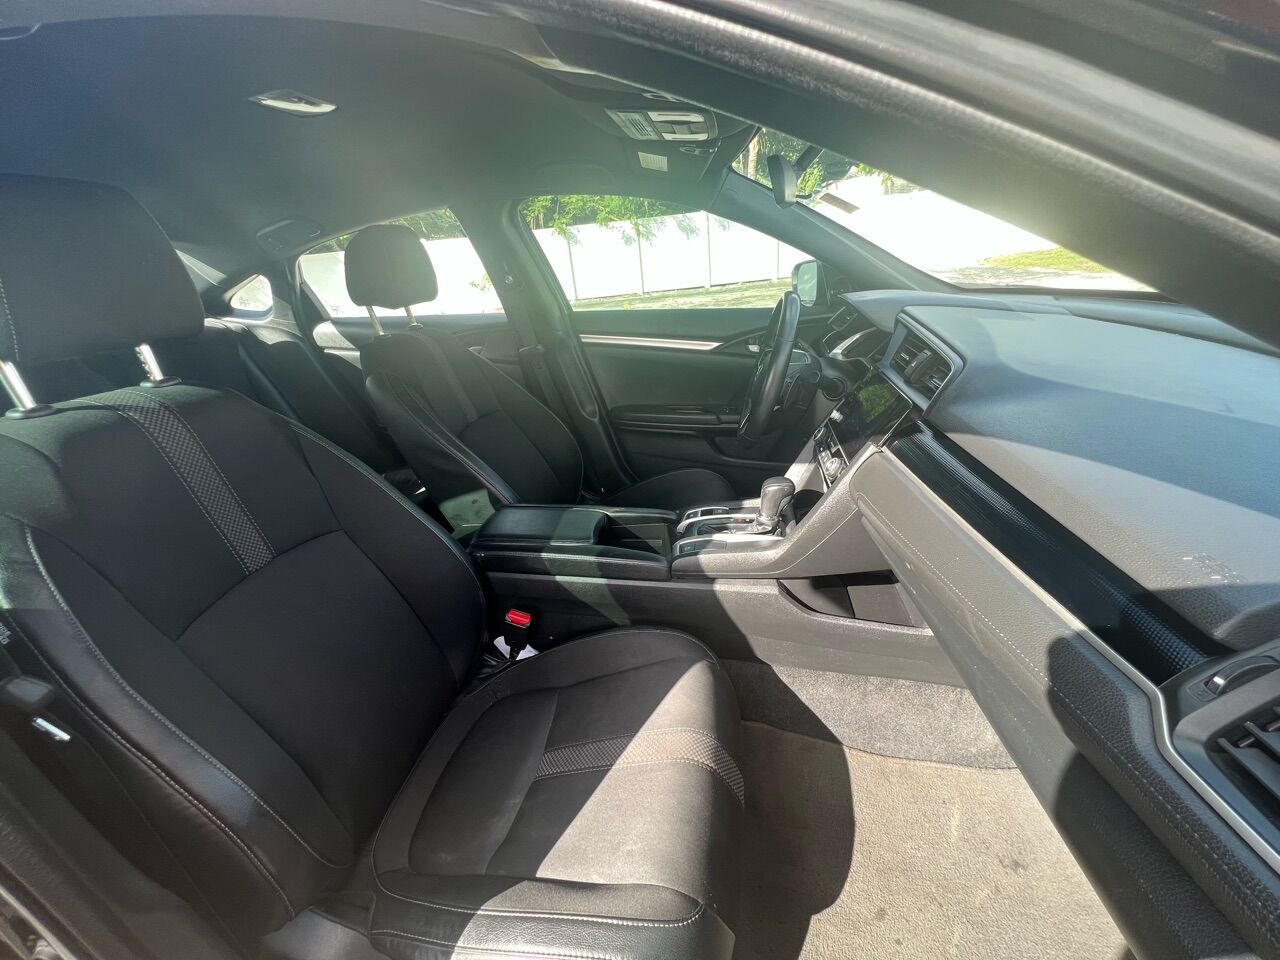 2020 HONDA Civic Sedan - $17,900